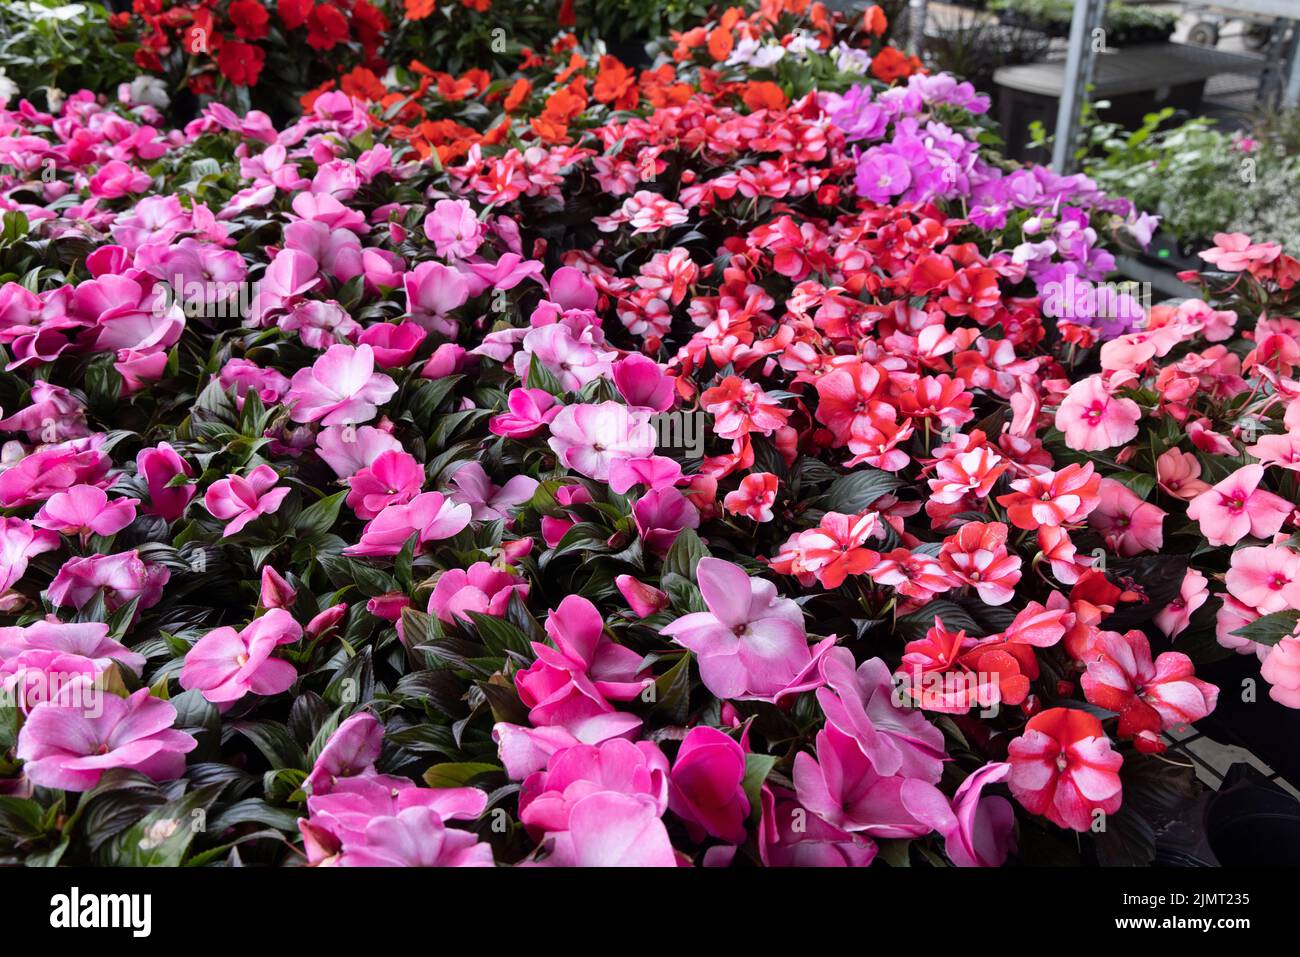 Exposition colorée de fleurs rouges et violettes sur un marché local Banque D'Images